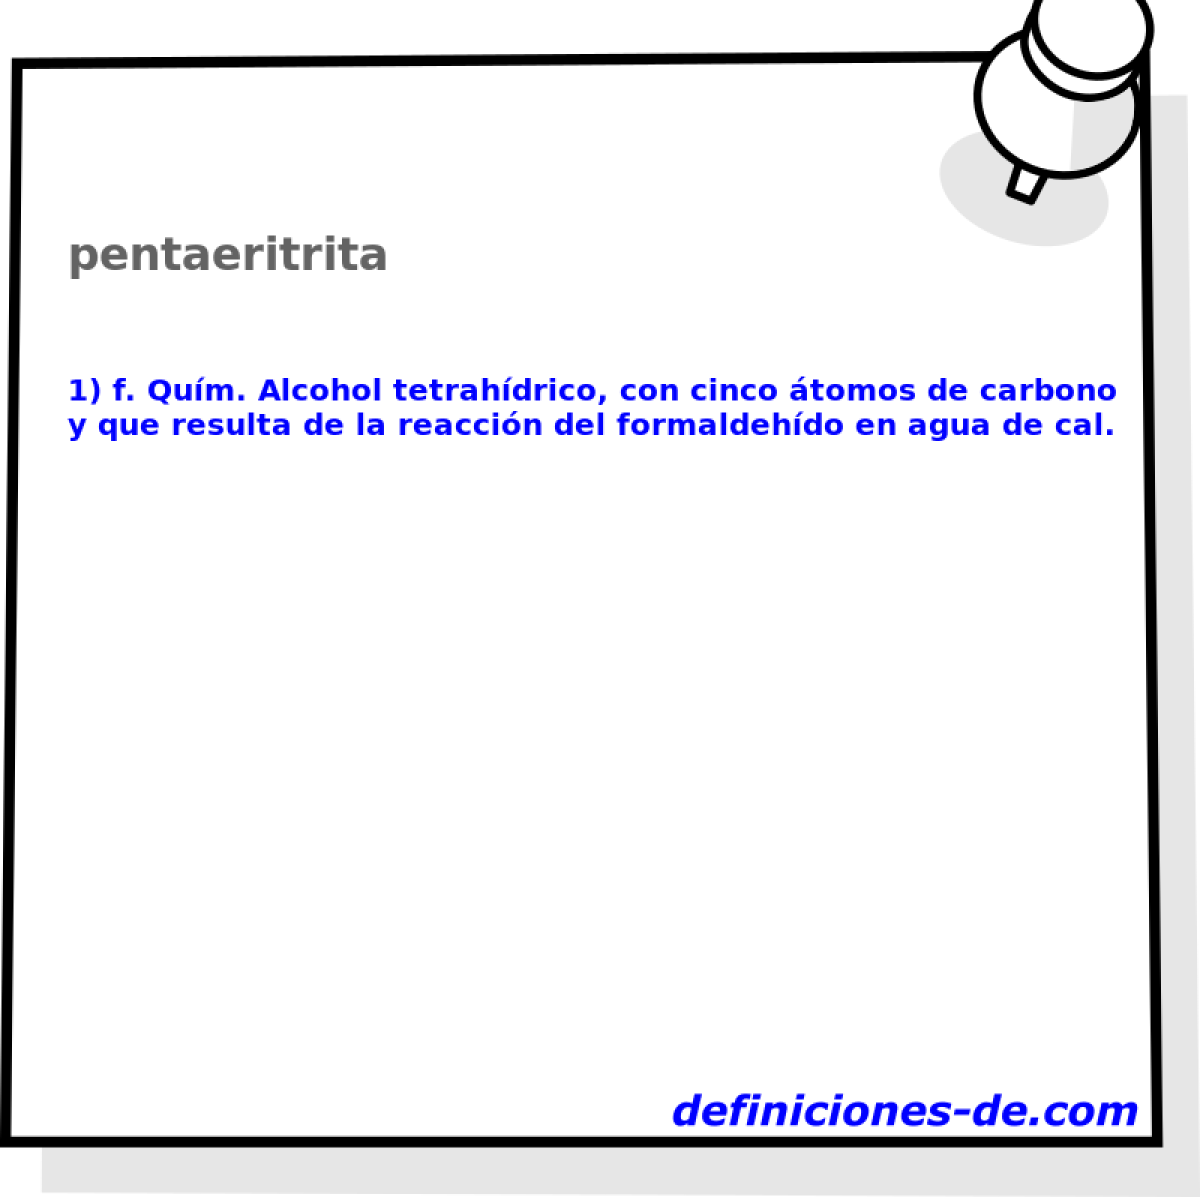 pentaeritrita 